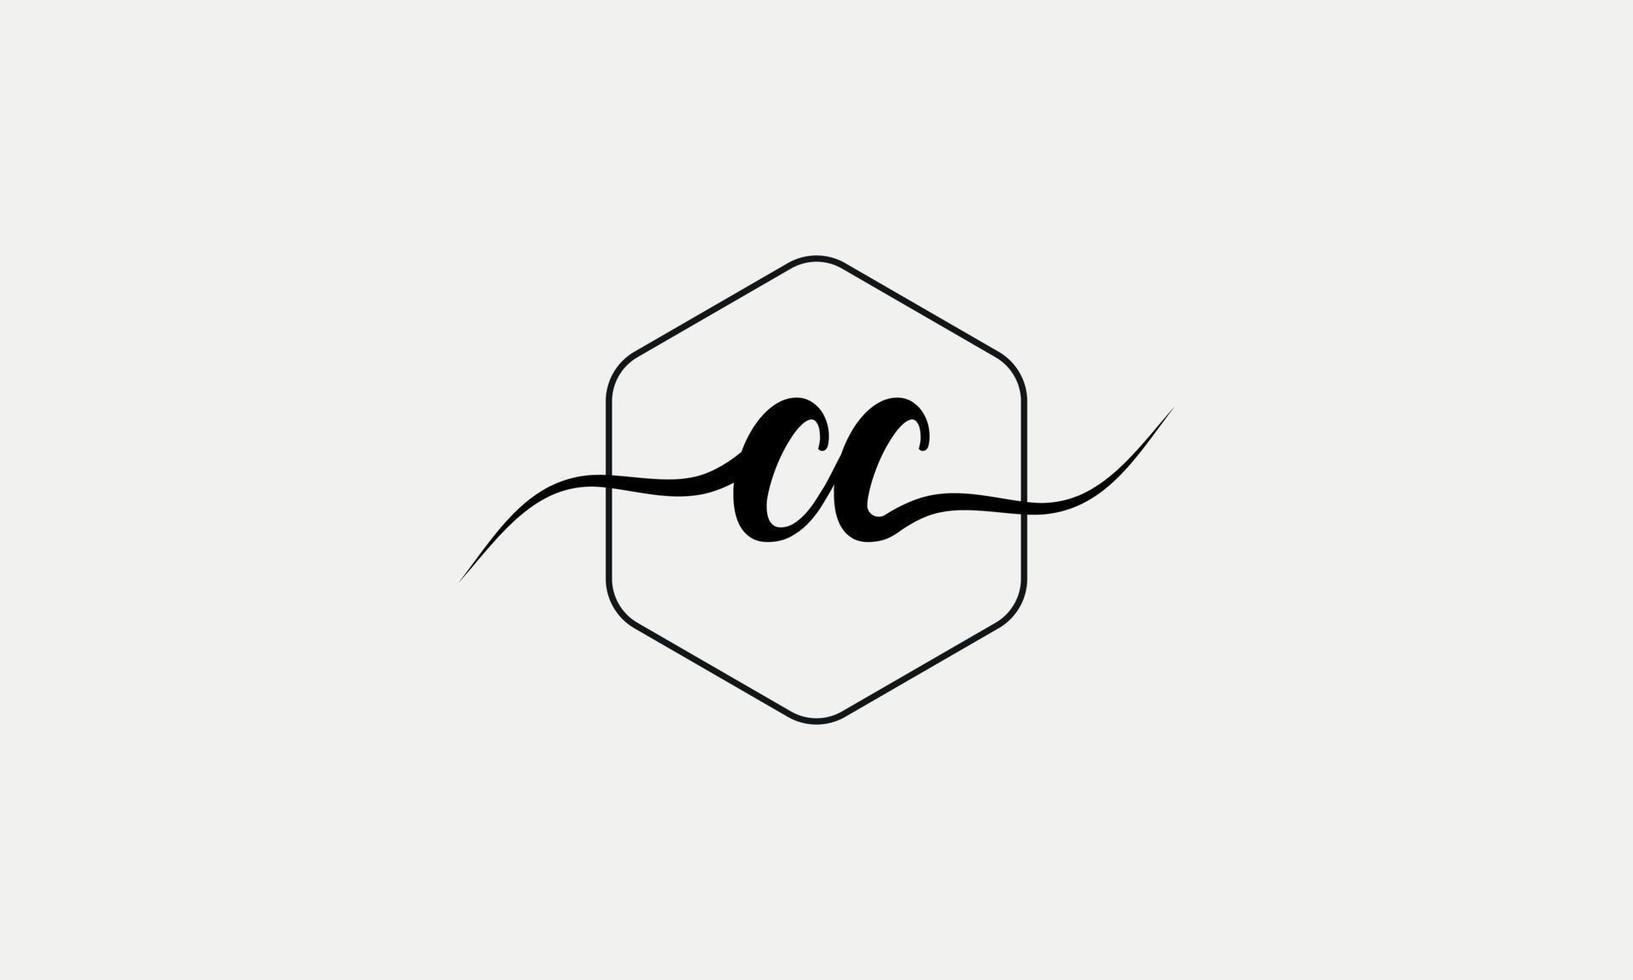 écriture manuscrite lettre cc logo pro fichier vectoriel